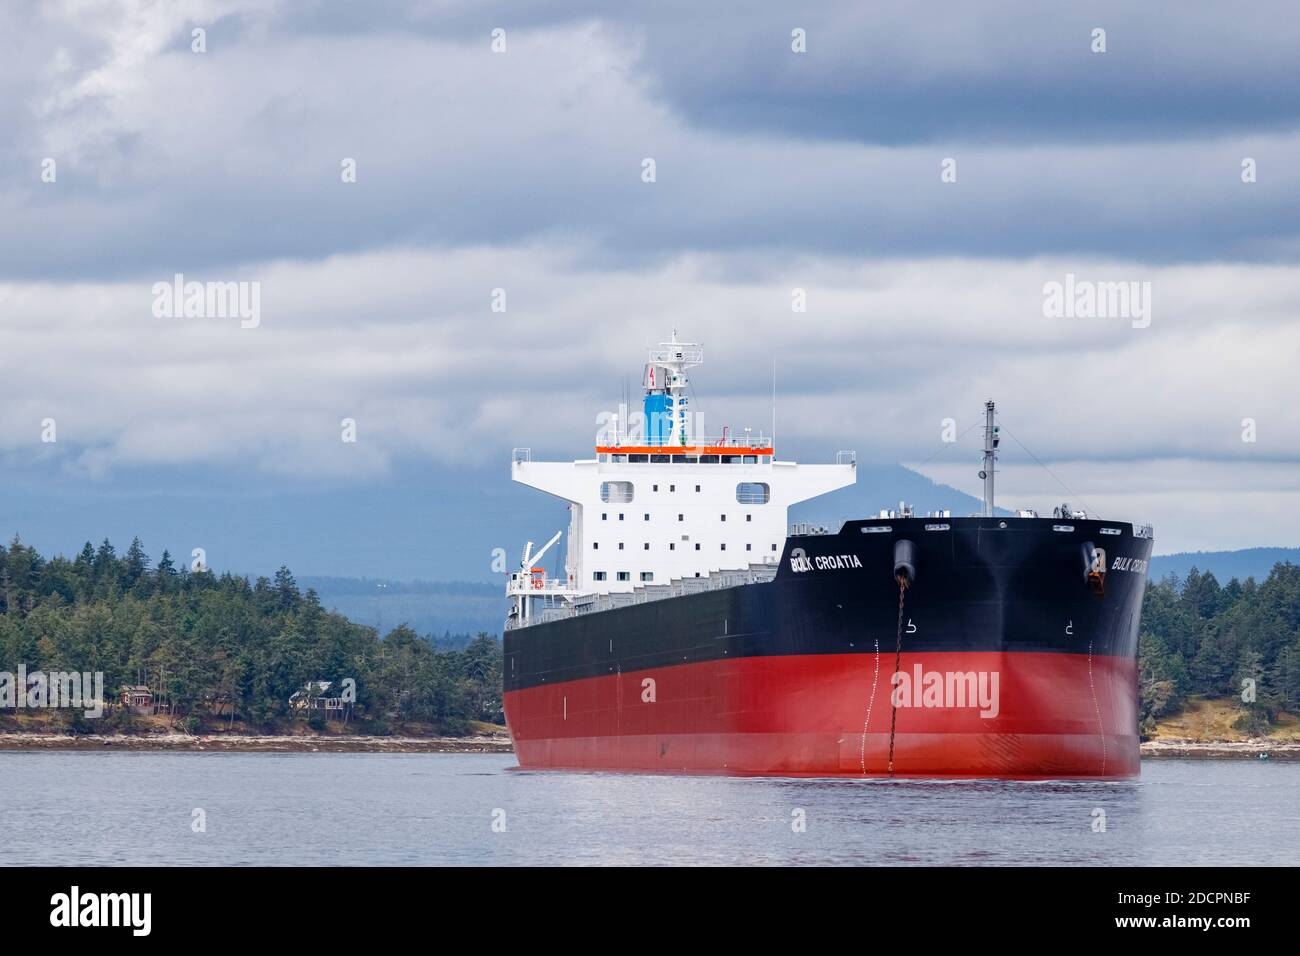 Ancré juste au large de l'île de Thetis, en Colombie-Britannique, le cargo de 228 mètres de long « Bulk Croatia » surplombe le rivage, semant la colère locale et la controverse. Banque D'Images